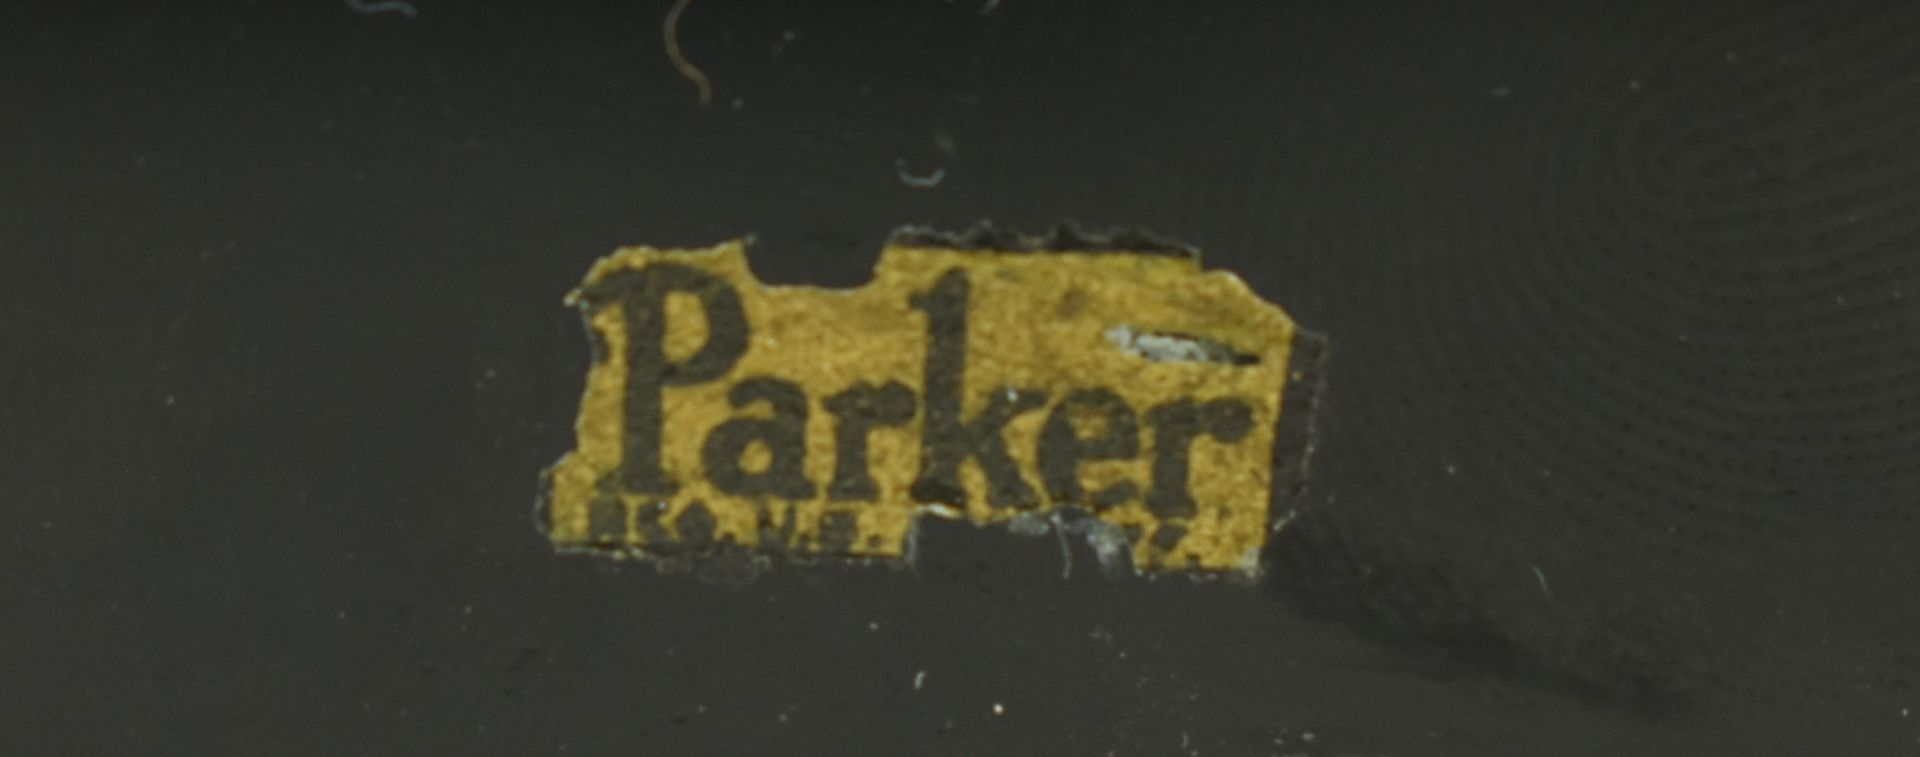 CIRCA 1940S PARKER PEN SLATE DESK TIDY SWIVEL PEN HOLDER - Image 6 of 6